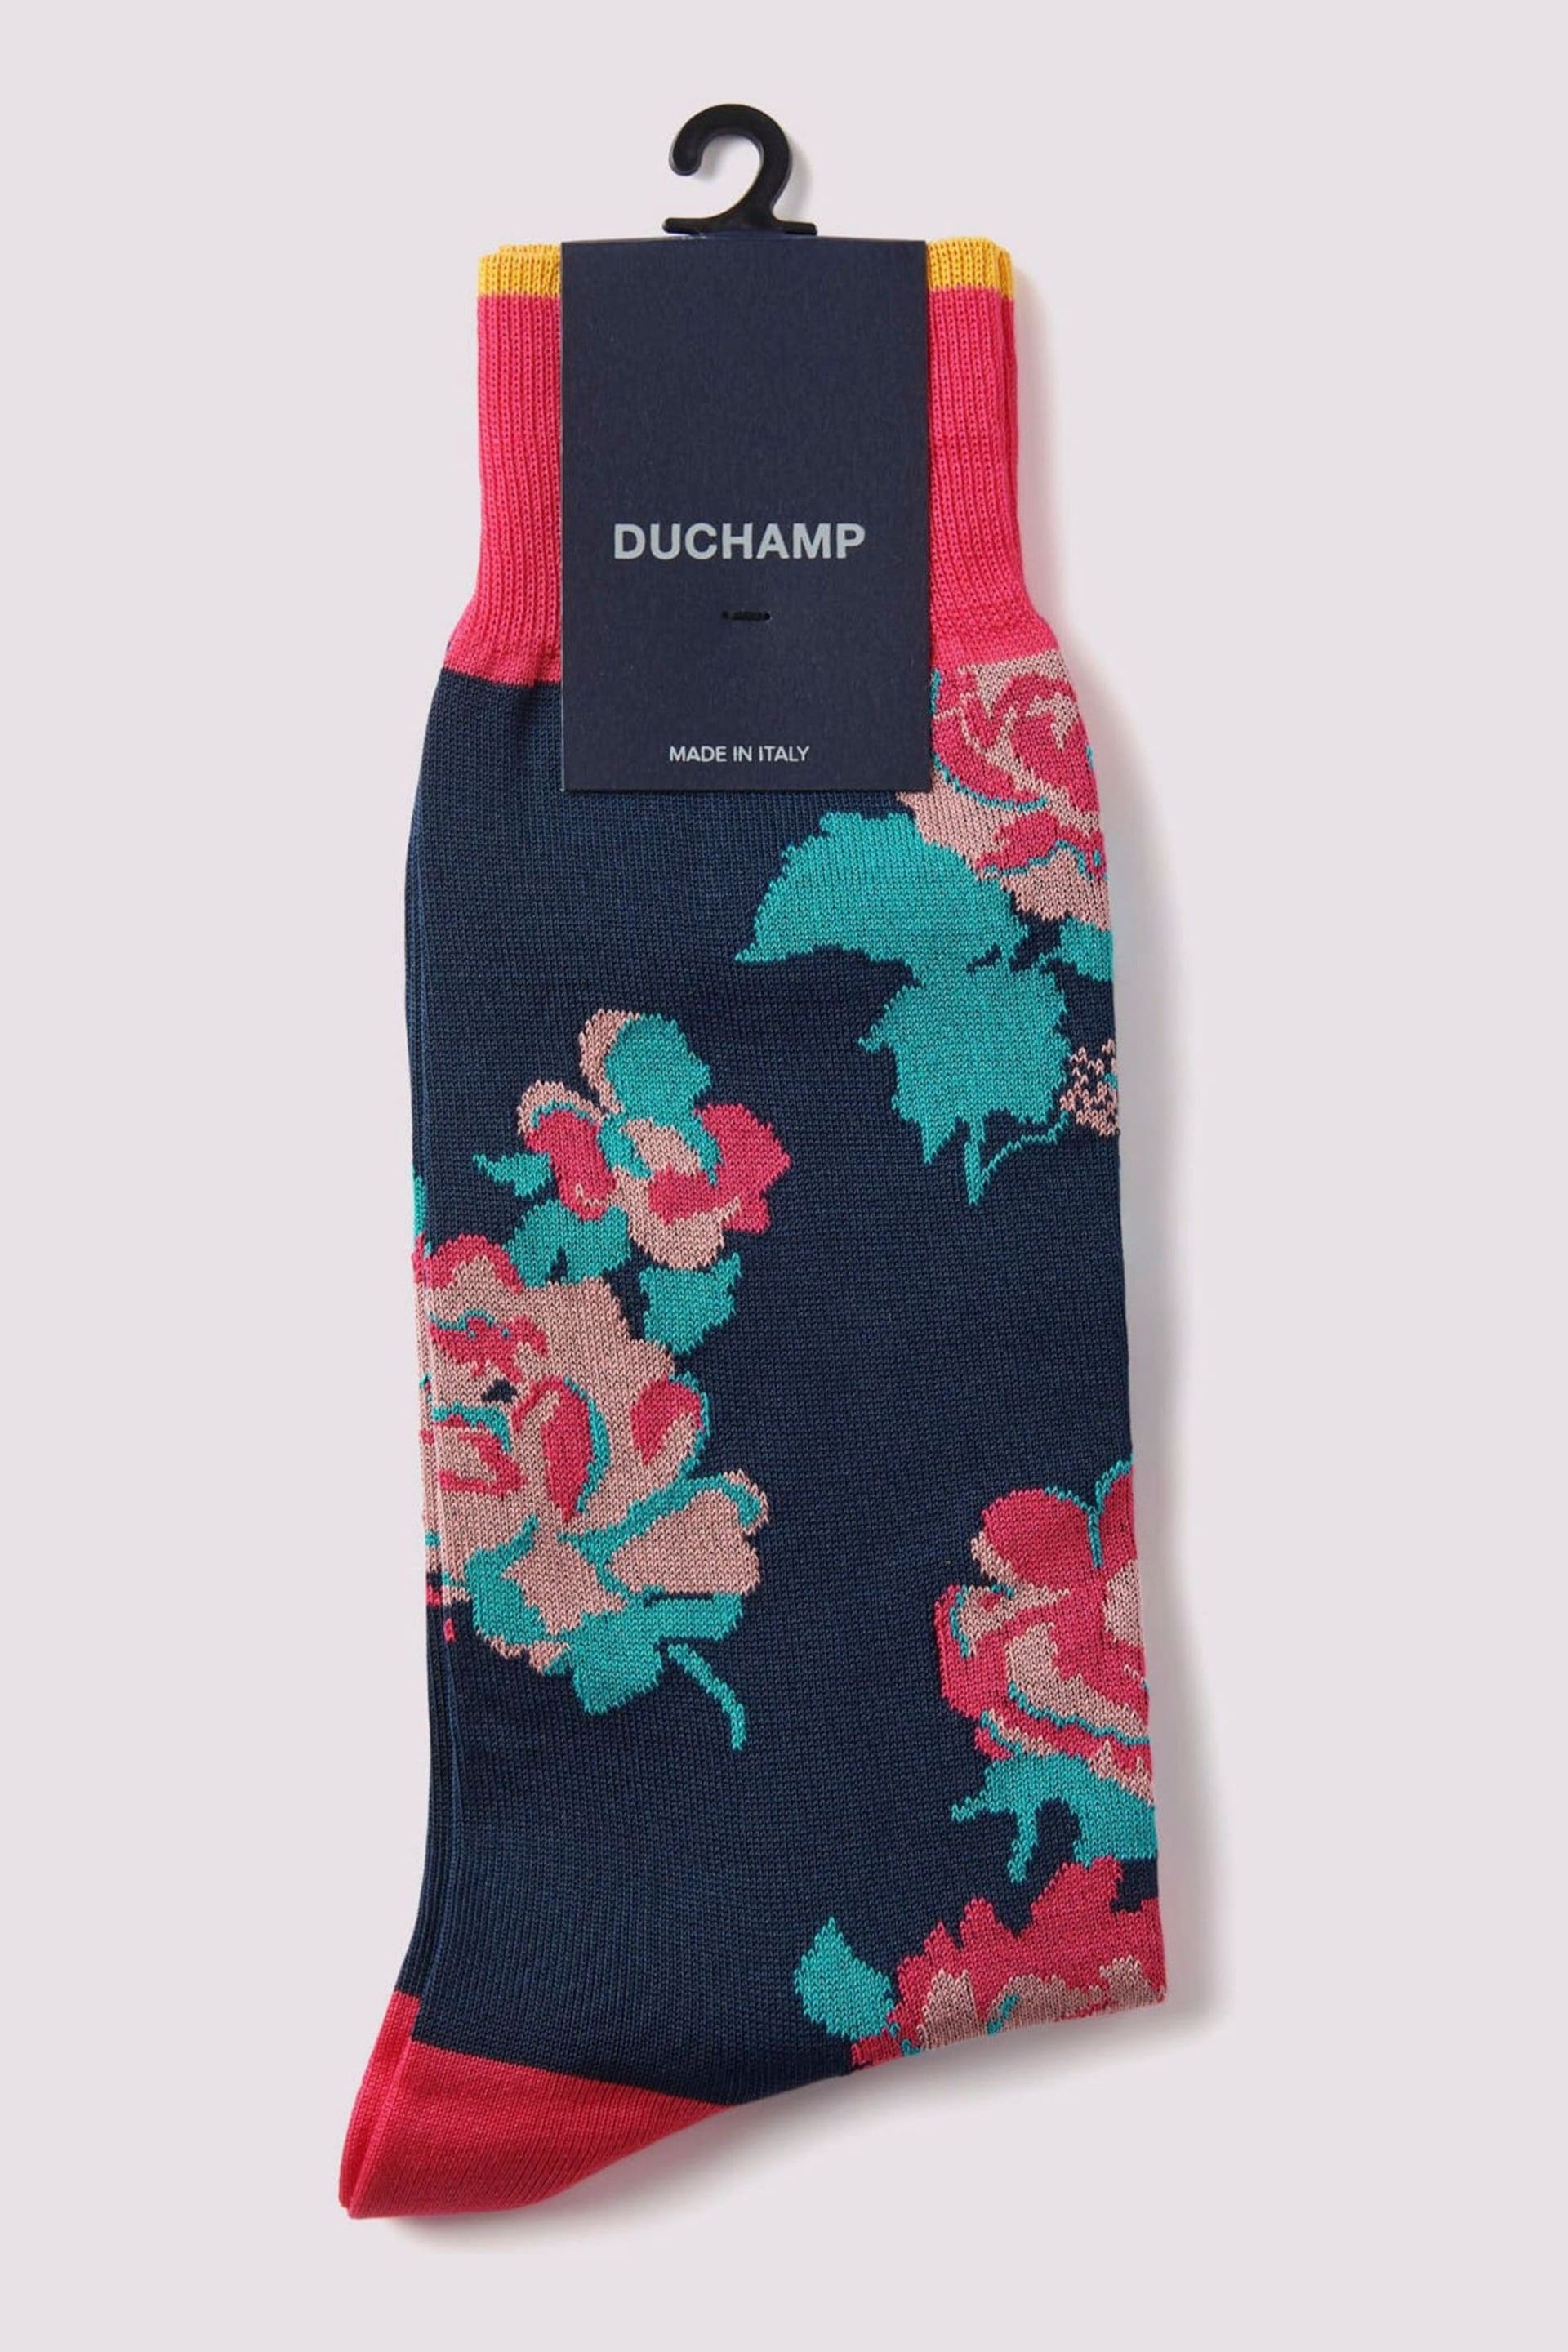 Duchamp Pink Floral Impression Socks - Image 1 of 3